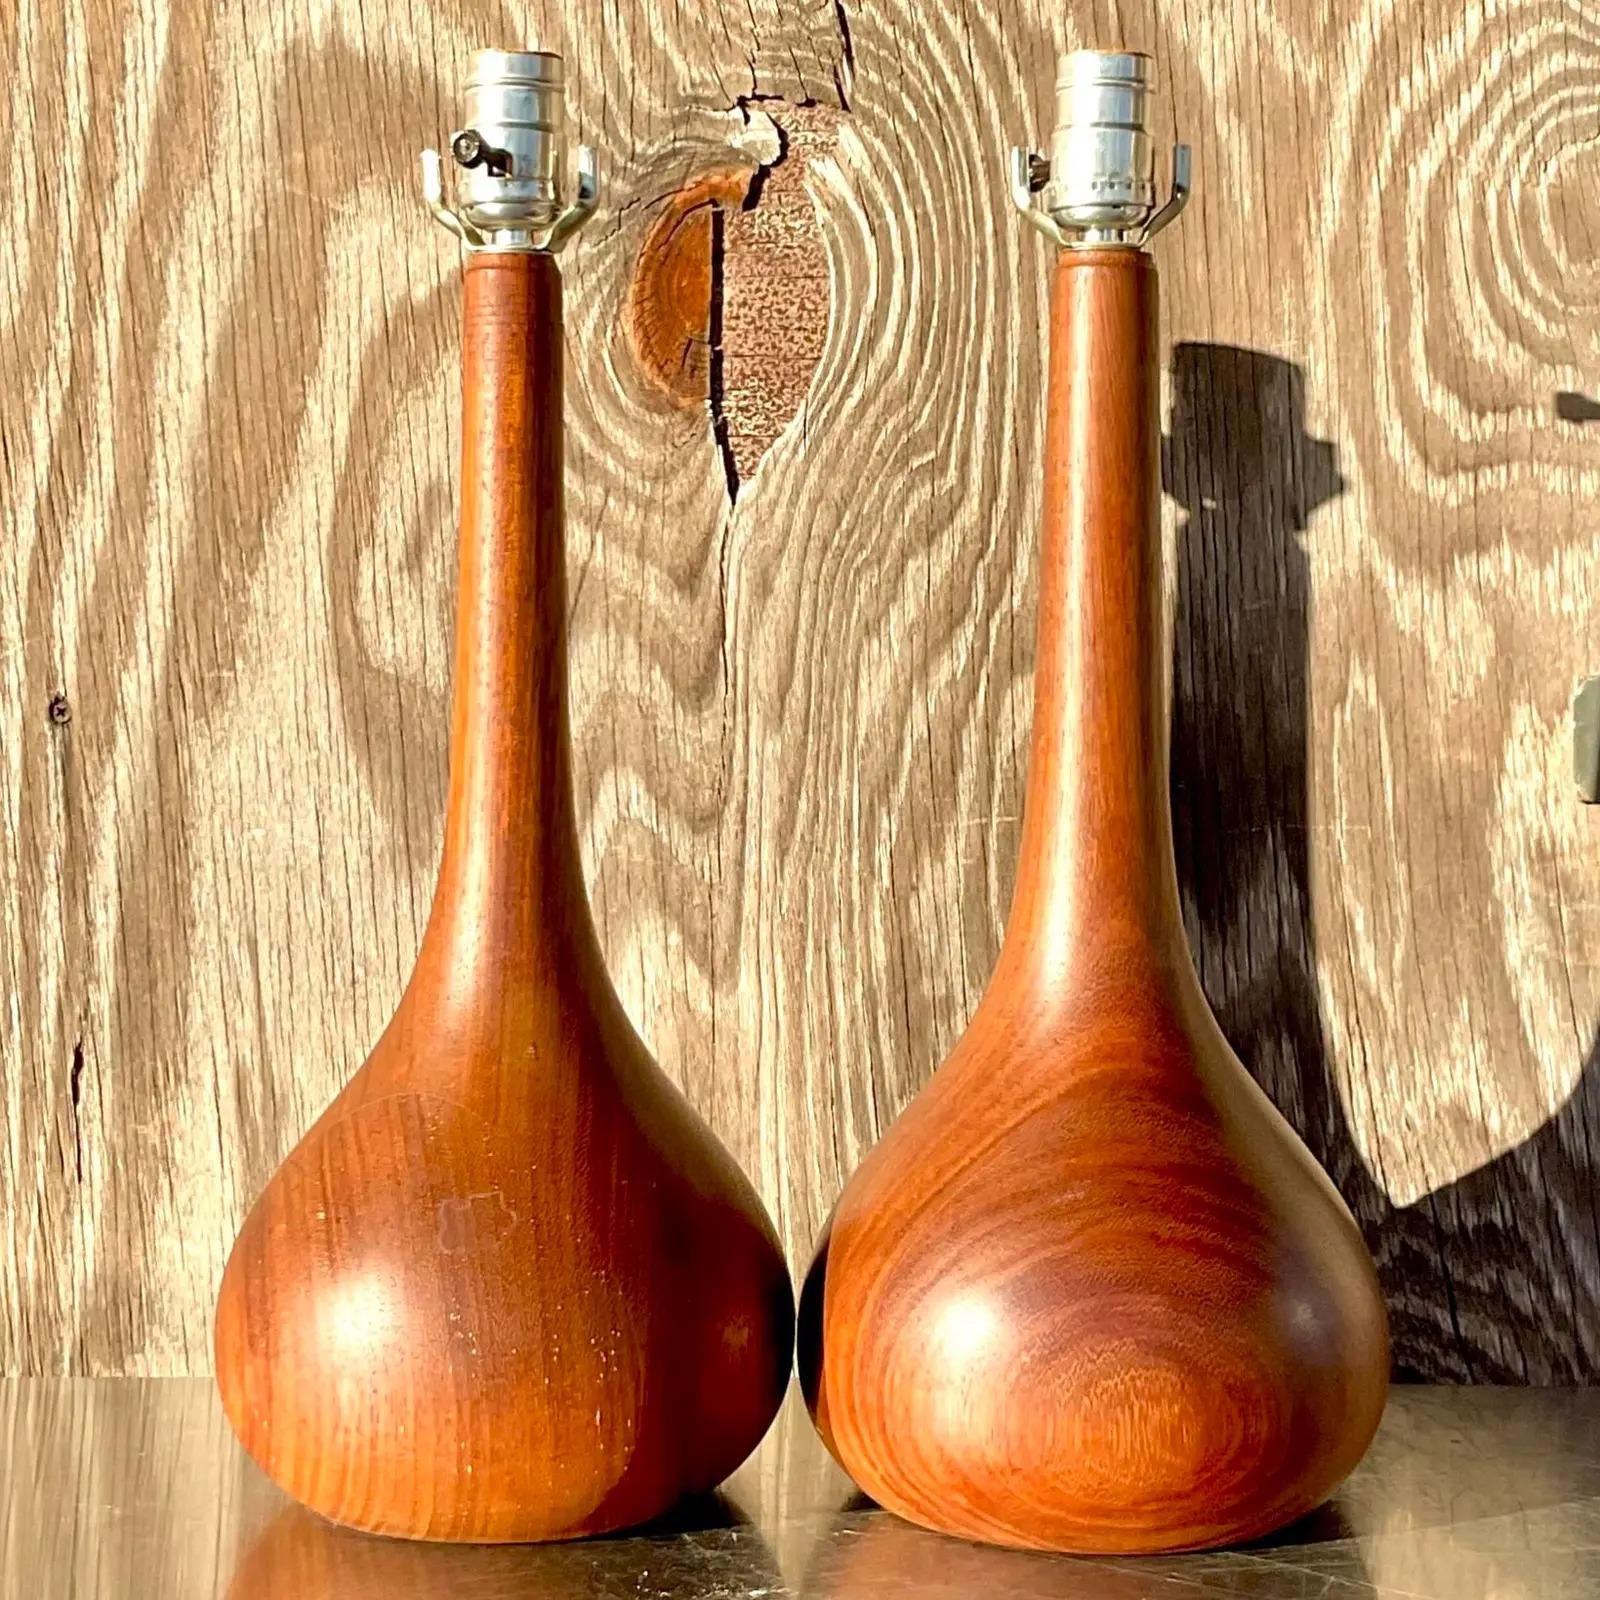 Une paire fantastique de lampes de table MCM vintage. Forme chic de bulbe d'oignon en bois de teck. Magnifique détail de grain de bois. Acquis d'une propriété de Palm Beach. 

Les lampes sont en excellent état. Petites éraflures et imperfections